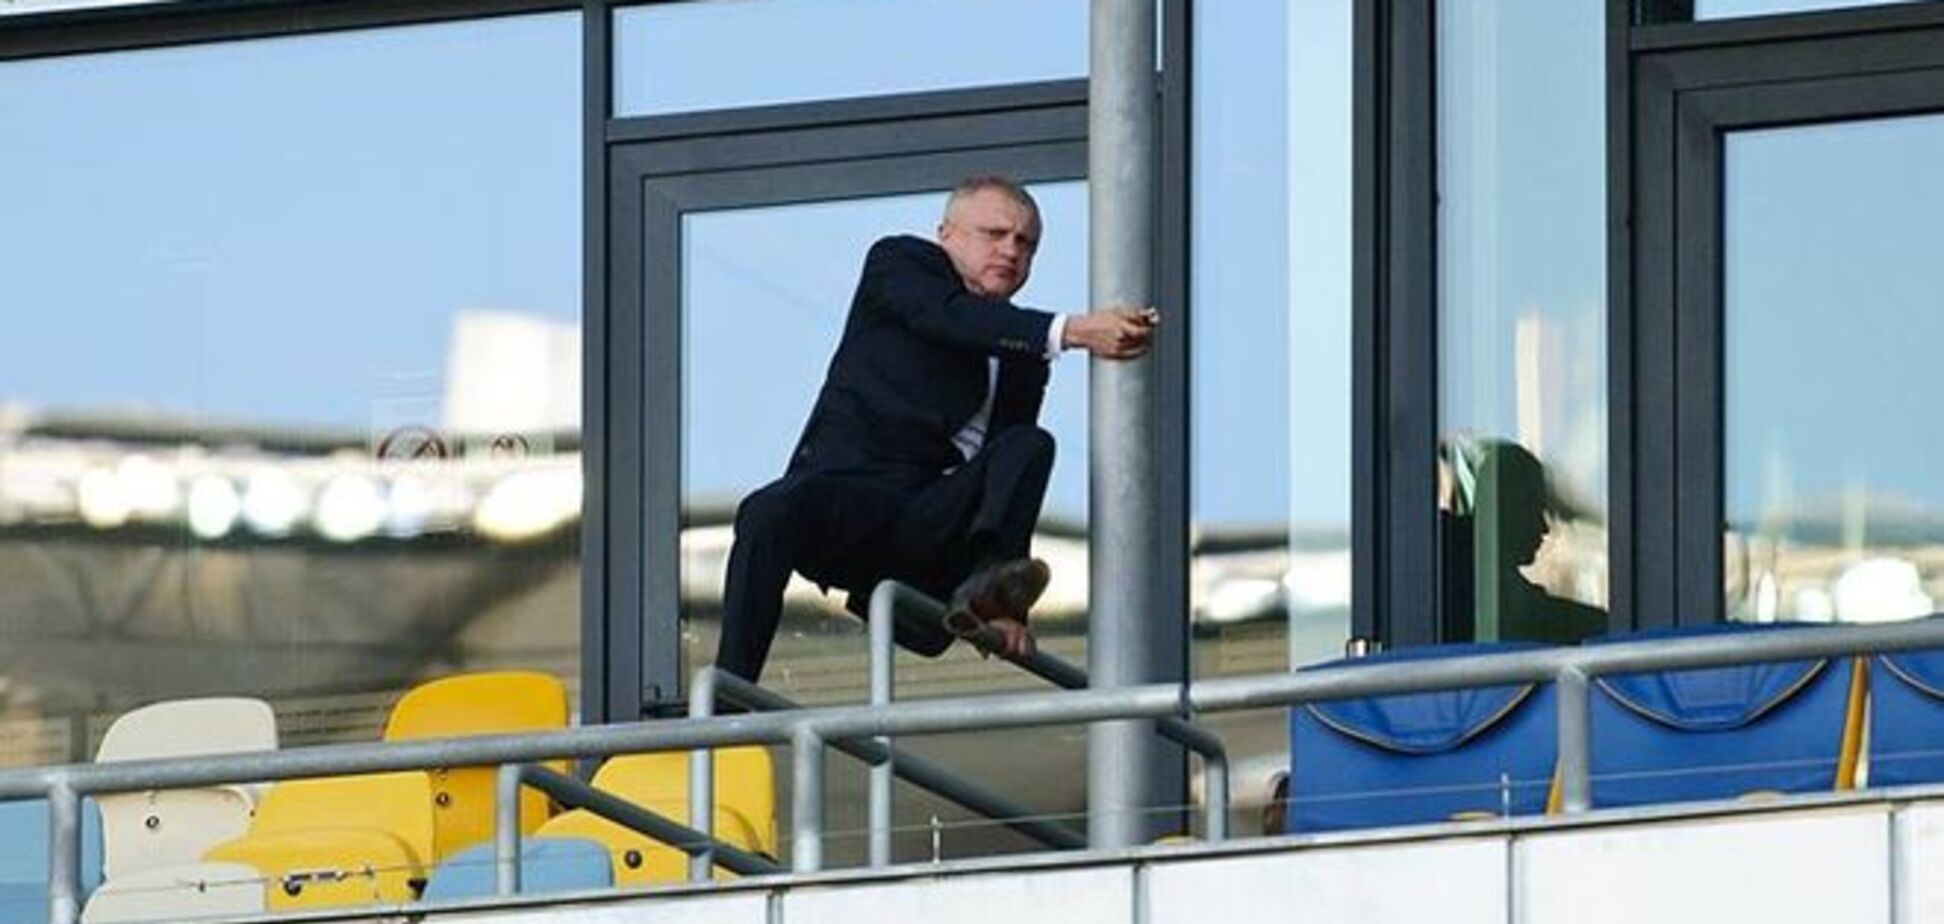 Фото года: Суркис перелазит через ограждение 'Олимпийского'